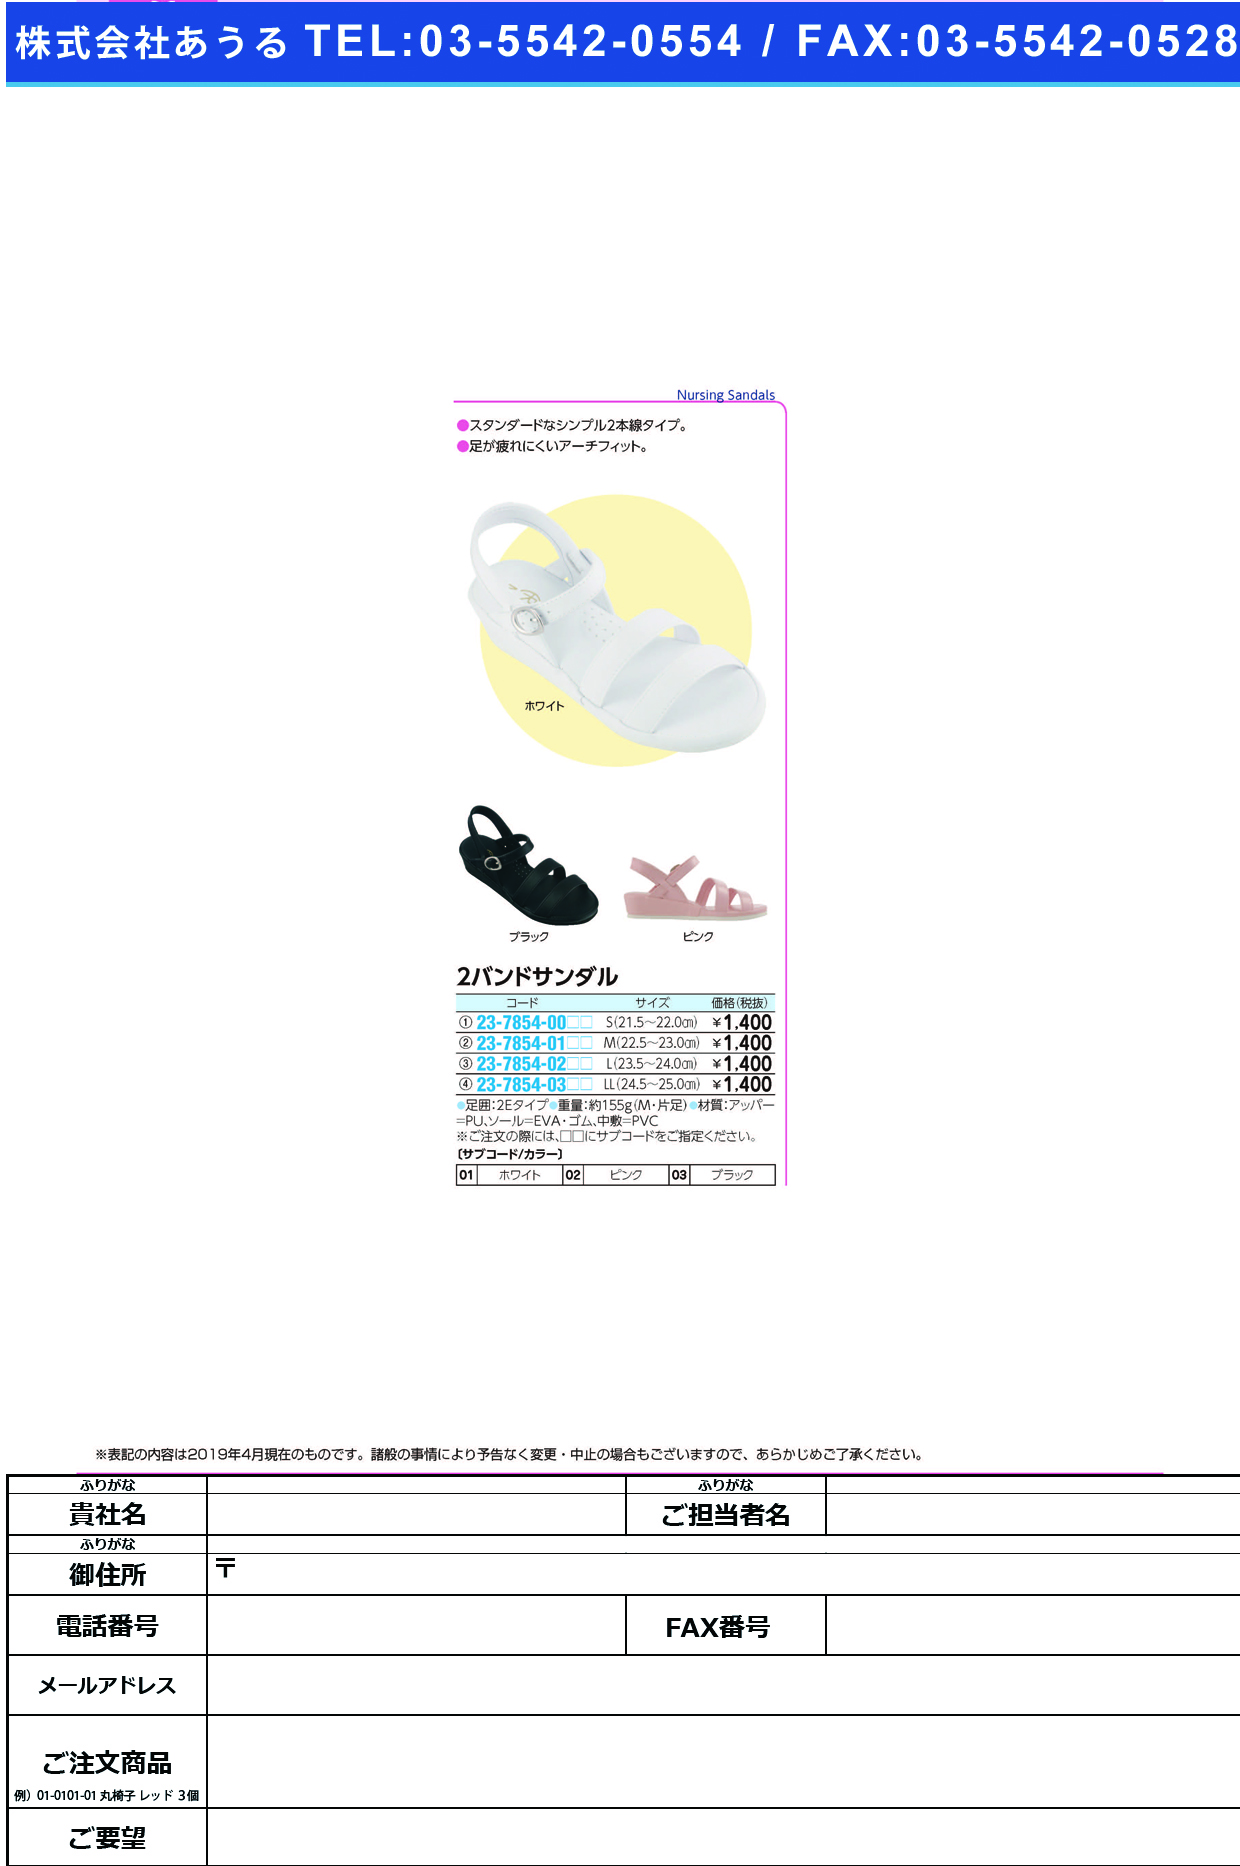 (23-7854-00)２バンドサンダル S(21.5-22.0CM) ﾂｰﾊﾞﾝﾄﾞｻﾝﾀﾞﾙ ホワイト(ファーストレイト)【1足単位】【2019年カタログ商品】